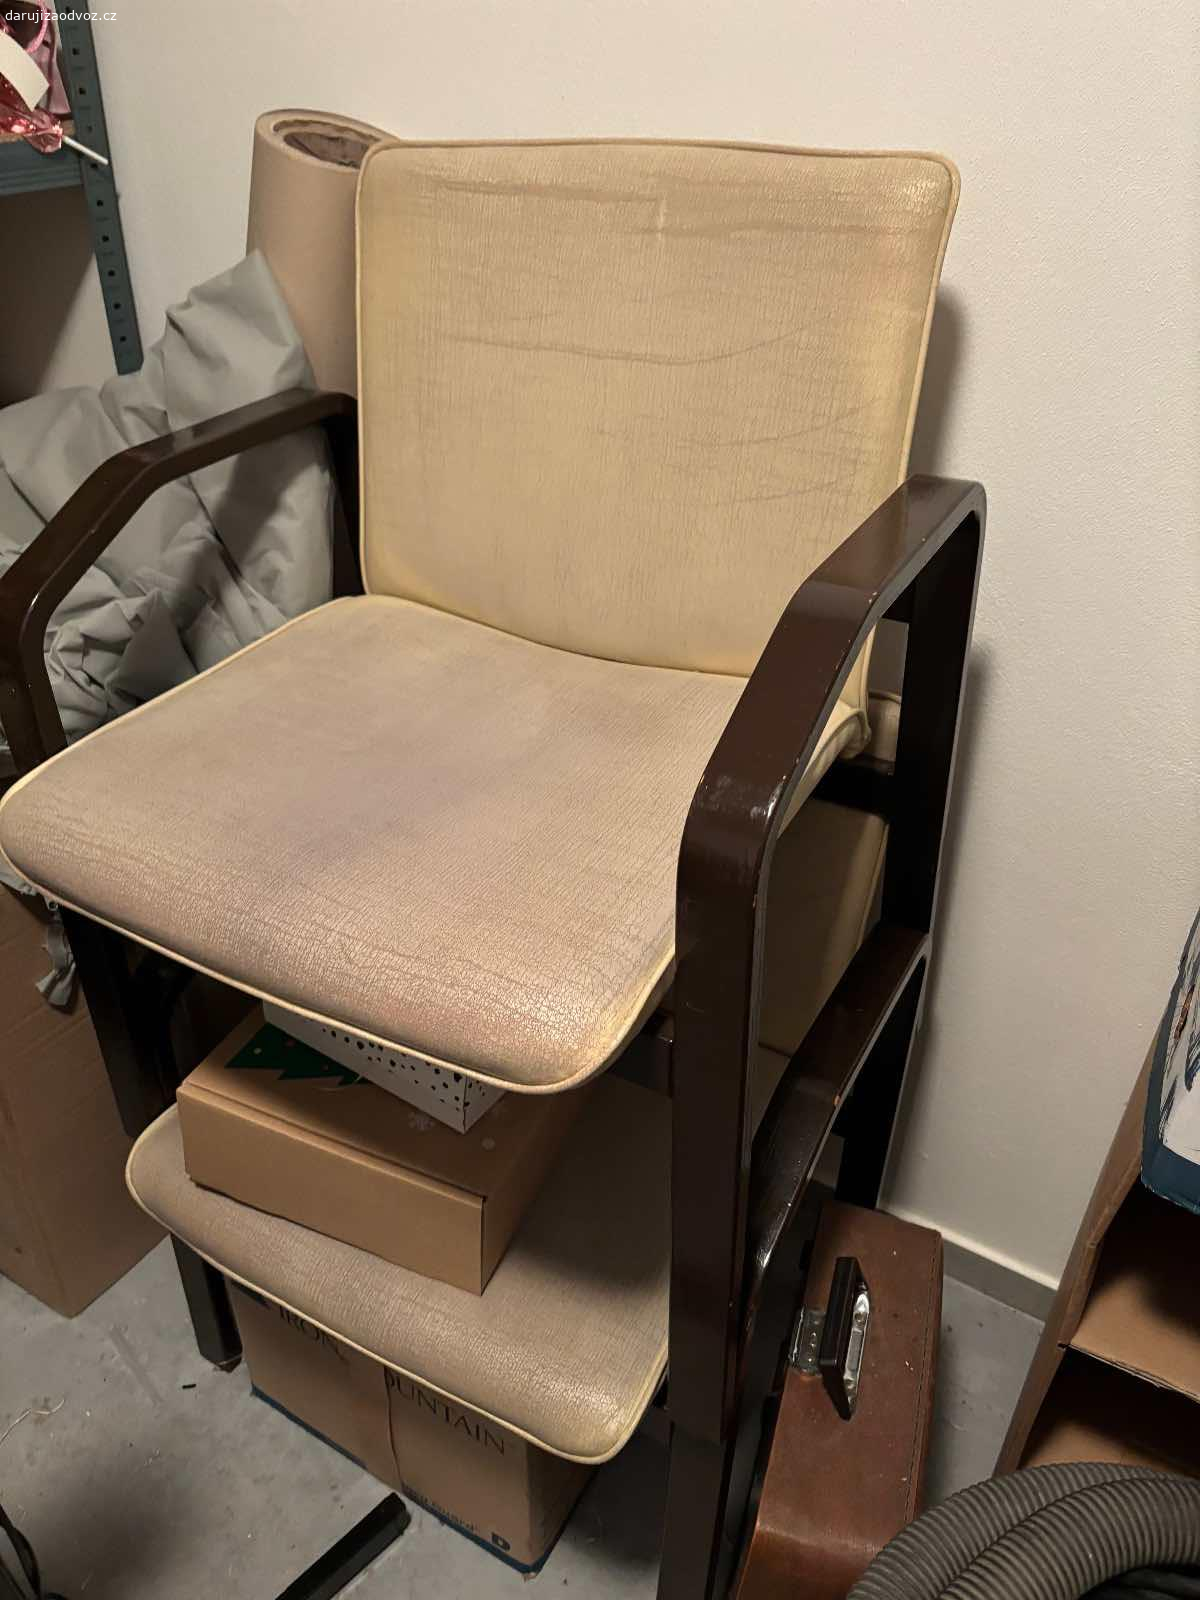 Daruji židličky. Daruji židličky za odvoz z centra Opavy. Poškozená koženka ale madla jsou v pořádku. 2 kusy